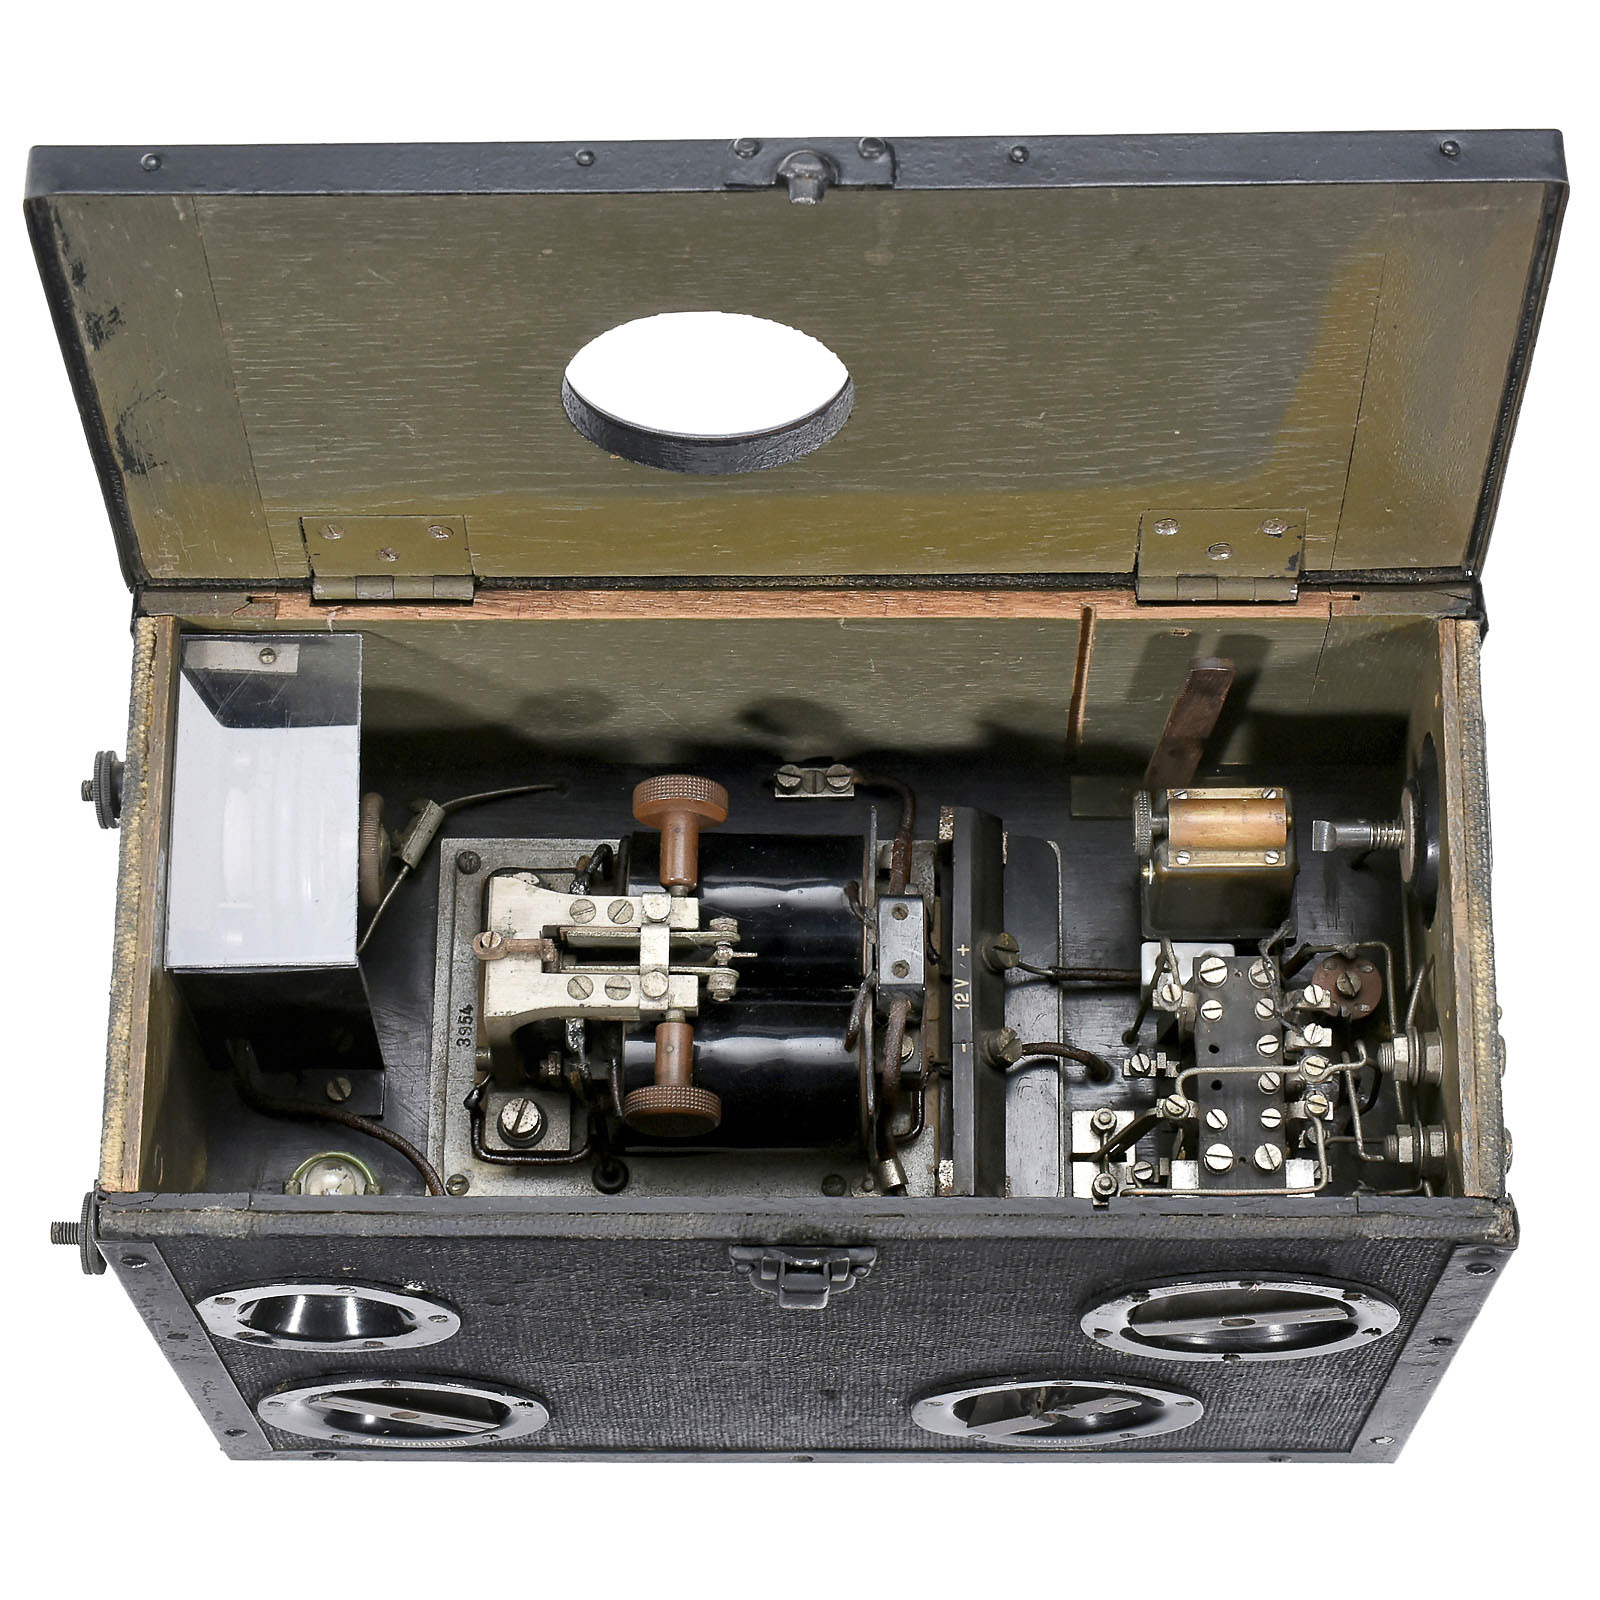 Telefunken Detector Receiver and Spark Transmitter, c. 1916  Tornister station KFuk 16, WWI mobile - Image 2 of 2